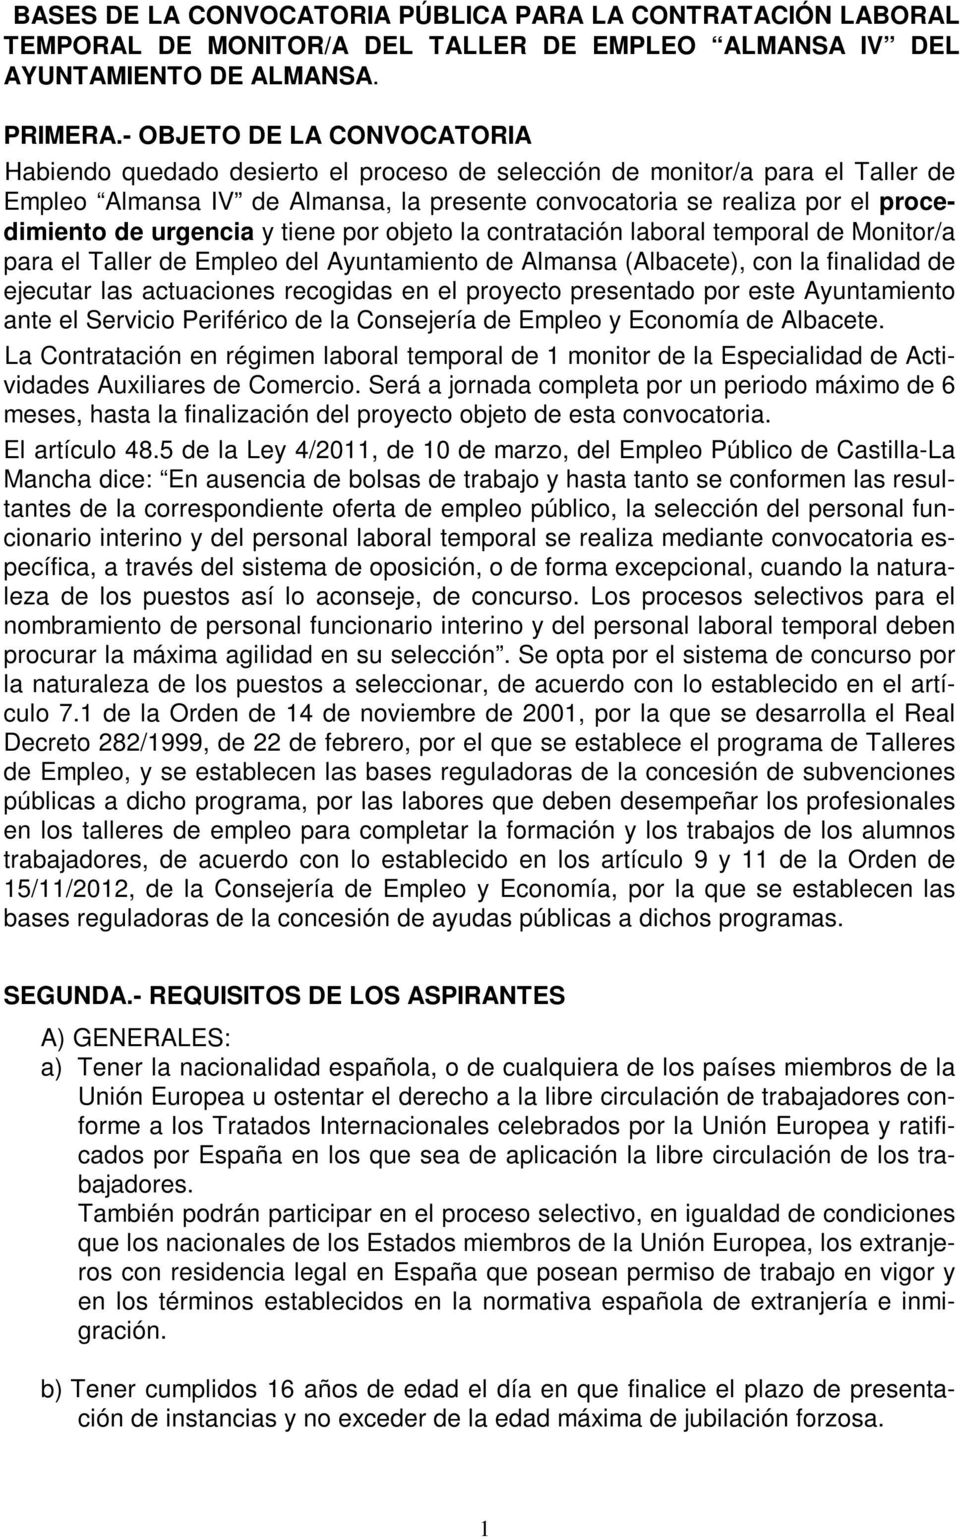 urgencia y tiene por objeto la contratación laboral temporal de Monitor/a para el Taller de Empleo del Ayuntamiento de Almansa (Albacete), con la finalidad de ejecutar las actuaciones recogidas en el